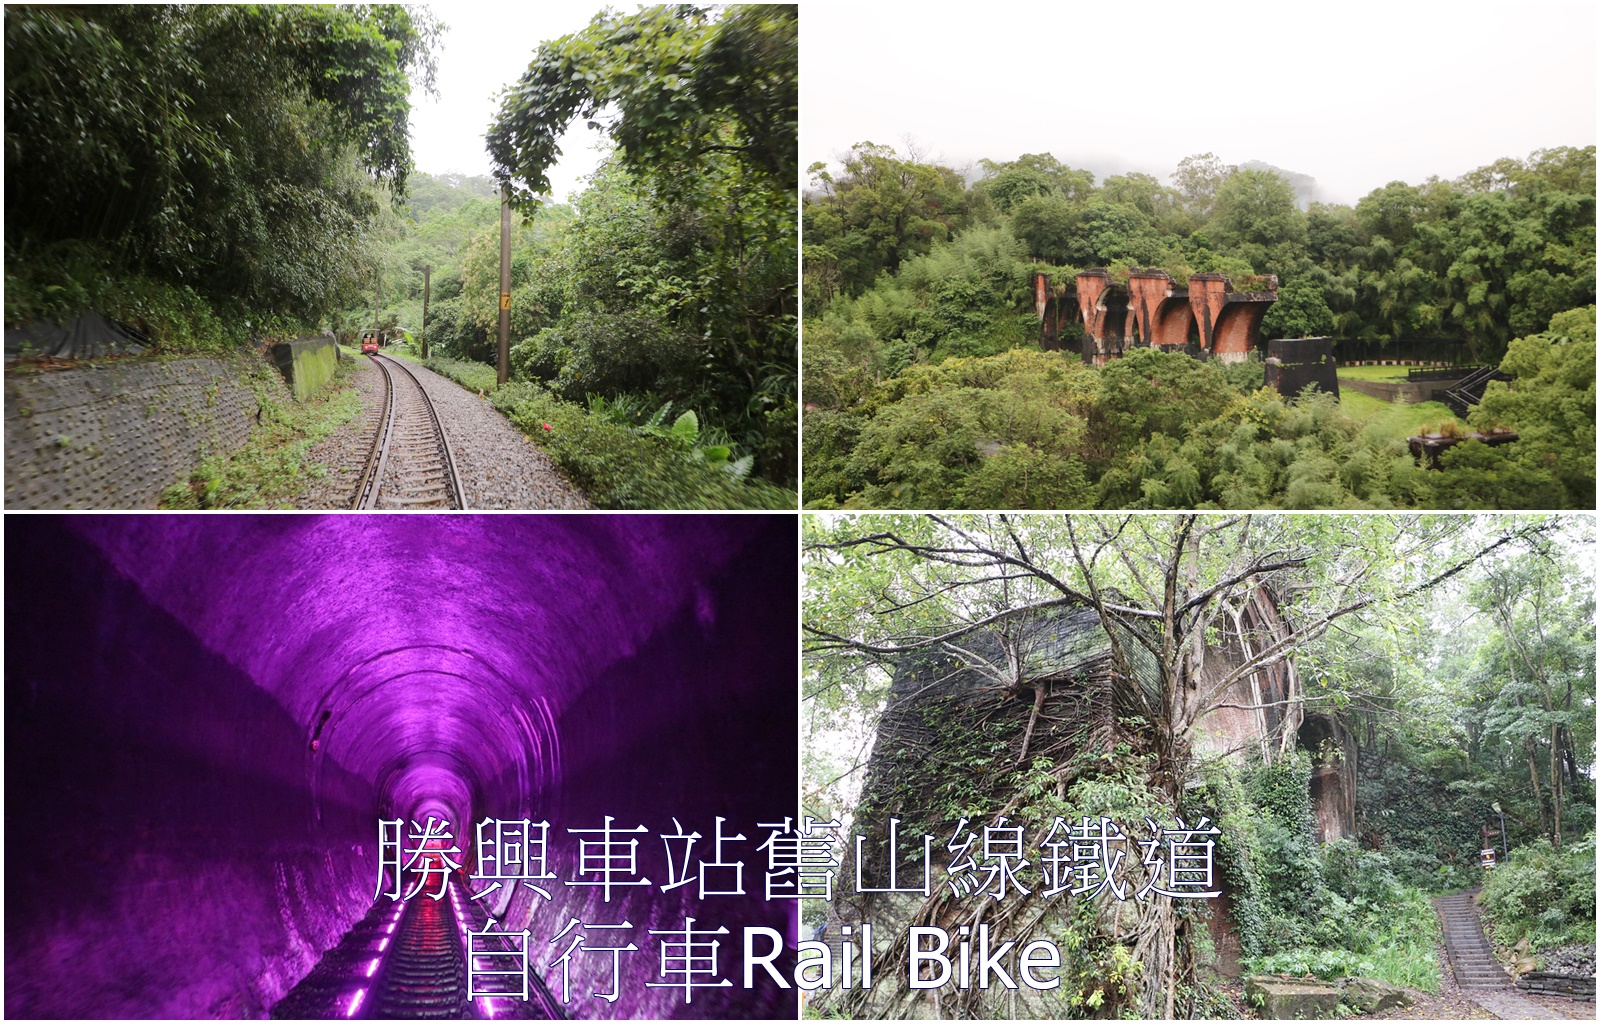 三義景點。勝興車站 舊山線鐵道自行車Rail Bike、龍騰斷橋，不用到韓國 就可體驗享受!!